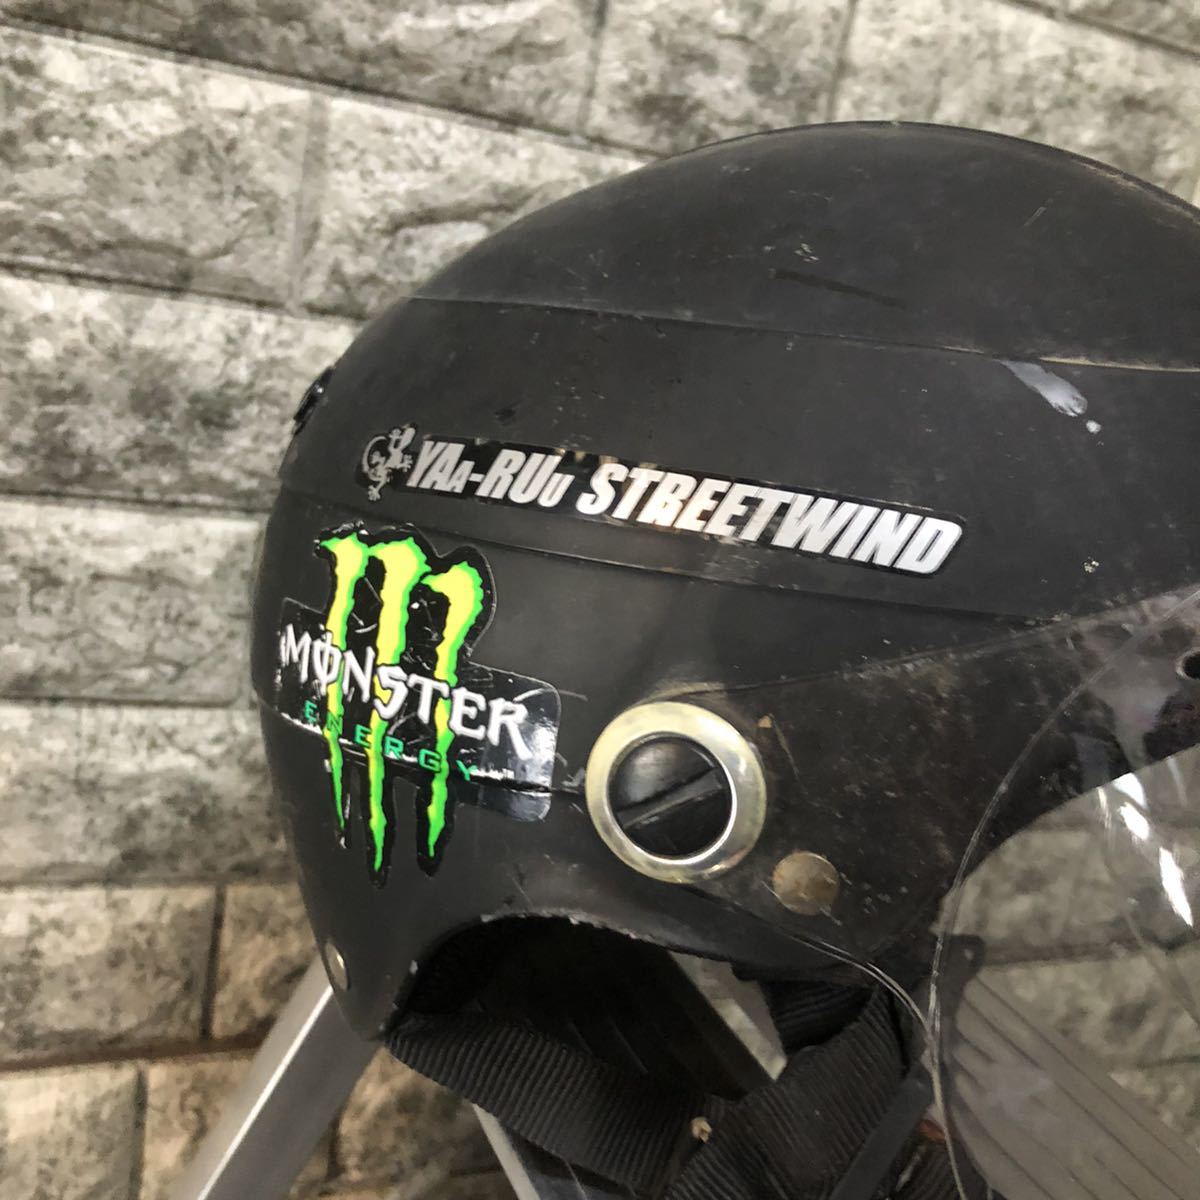 yaa-ruu streetwind  шлем  TNK промышленность    жиклер   шлем   половина  шлем   туманный  экран    половина  модель    легкий (по весу)   мотоцикл  для мотоцикла  ...